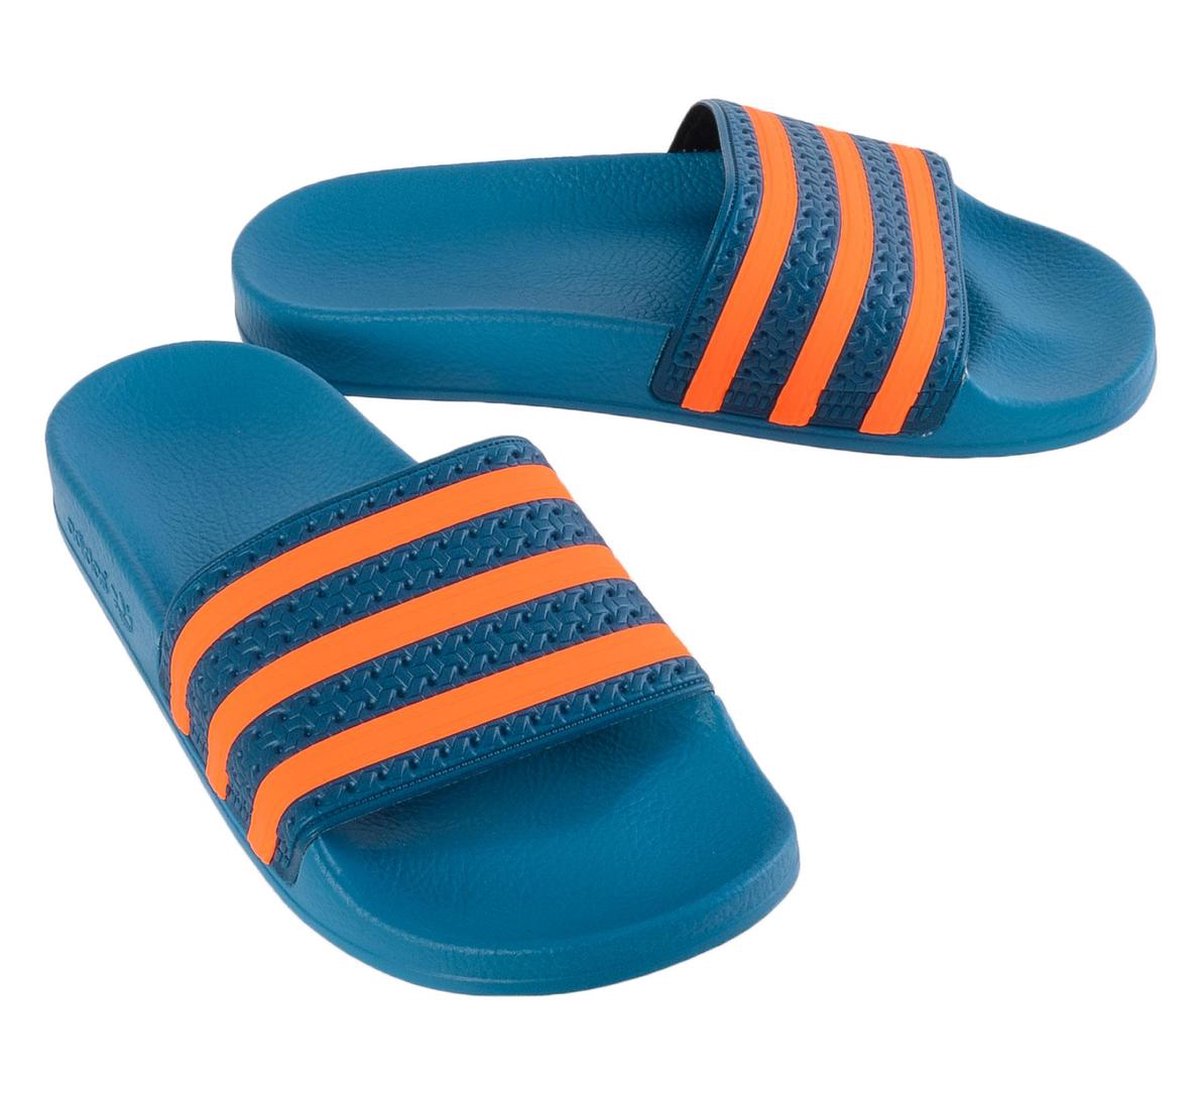 البيع المسبق أنفسنا غوي blauw oranje adidas slippers - rdarajouri.com